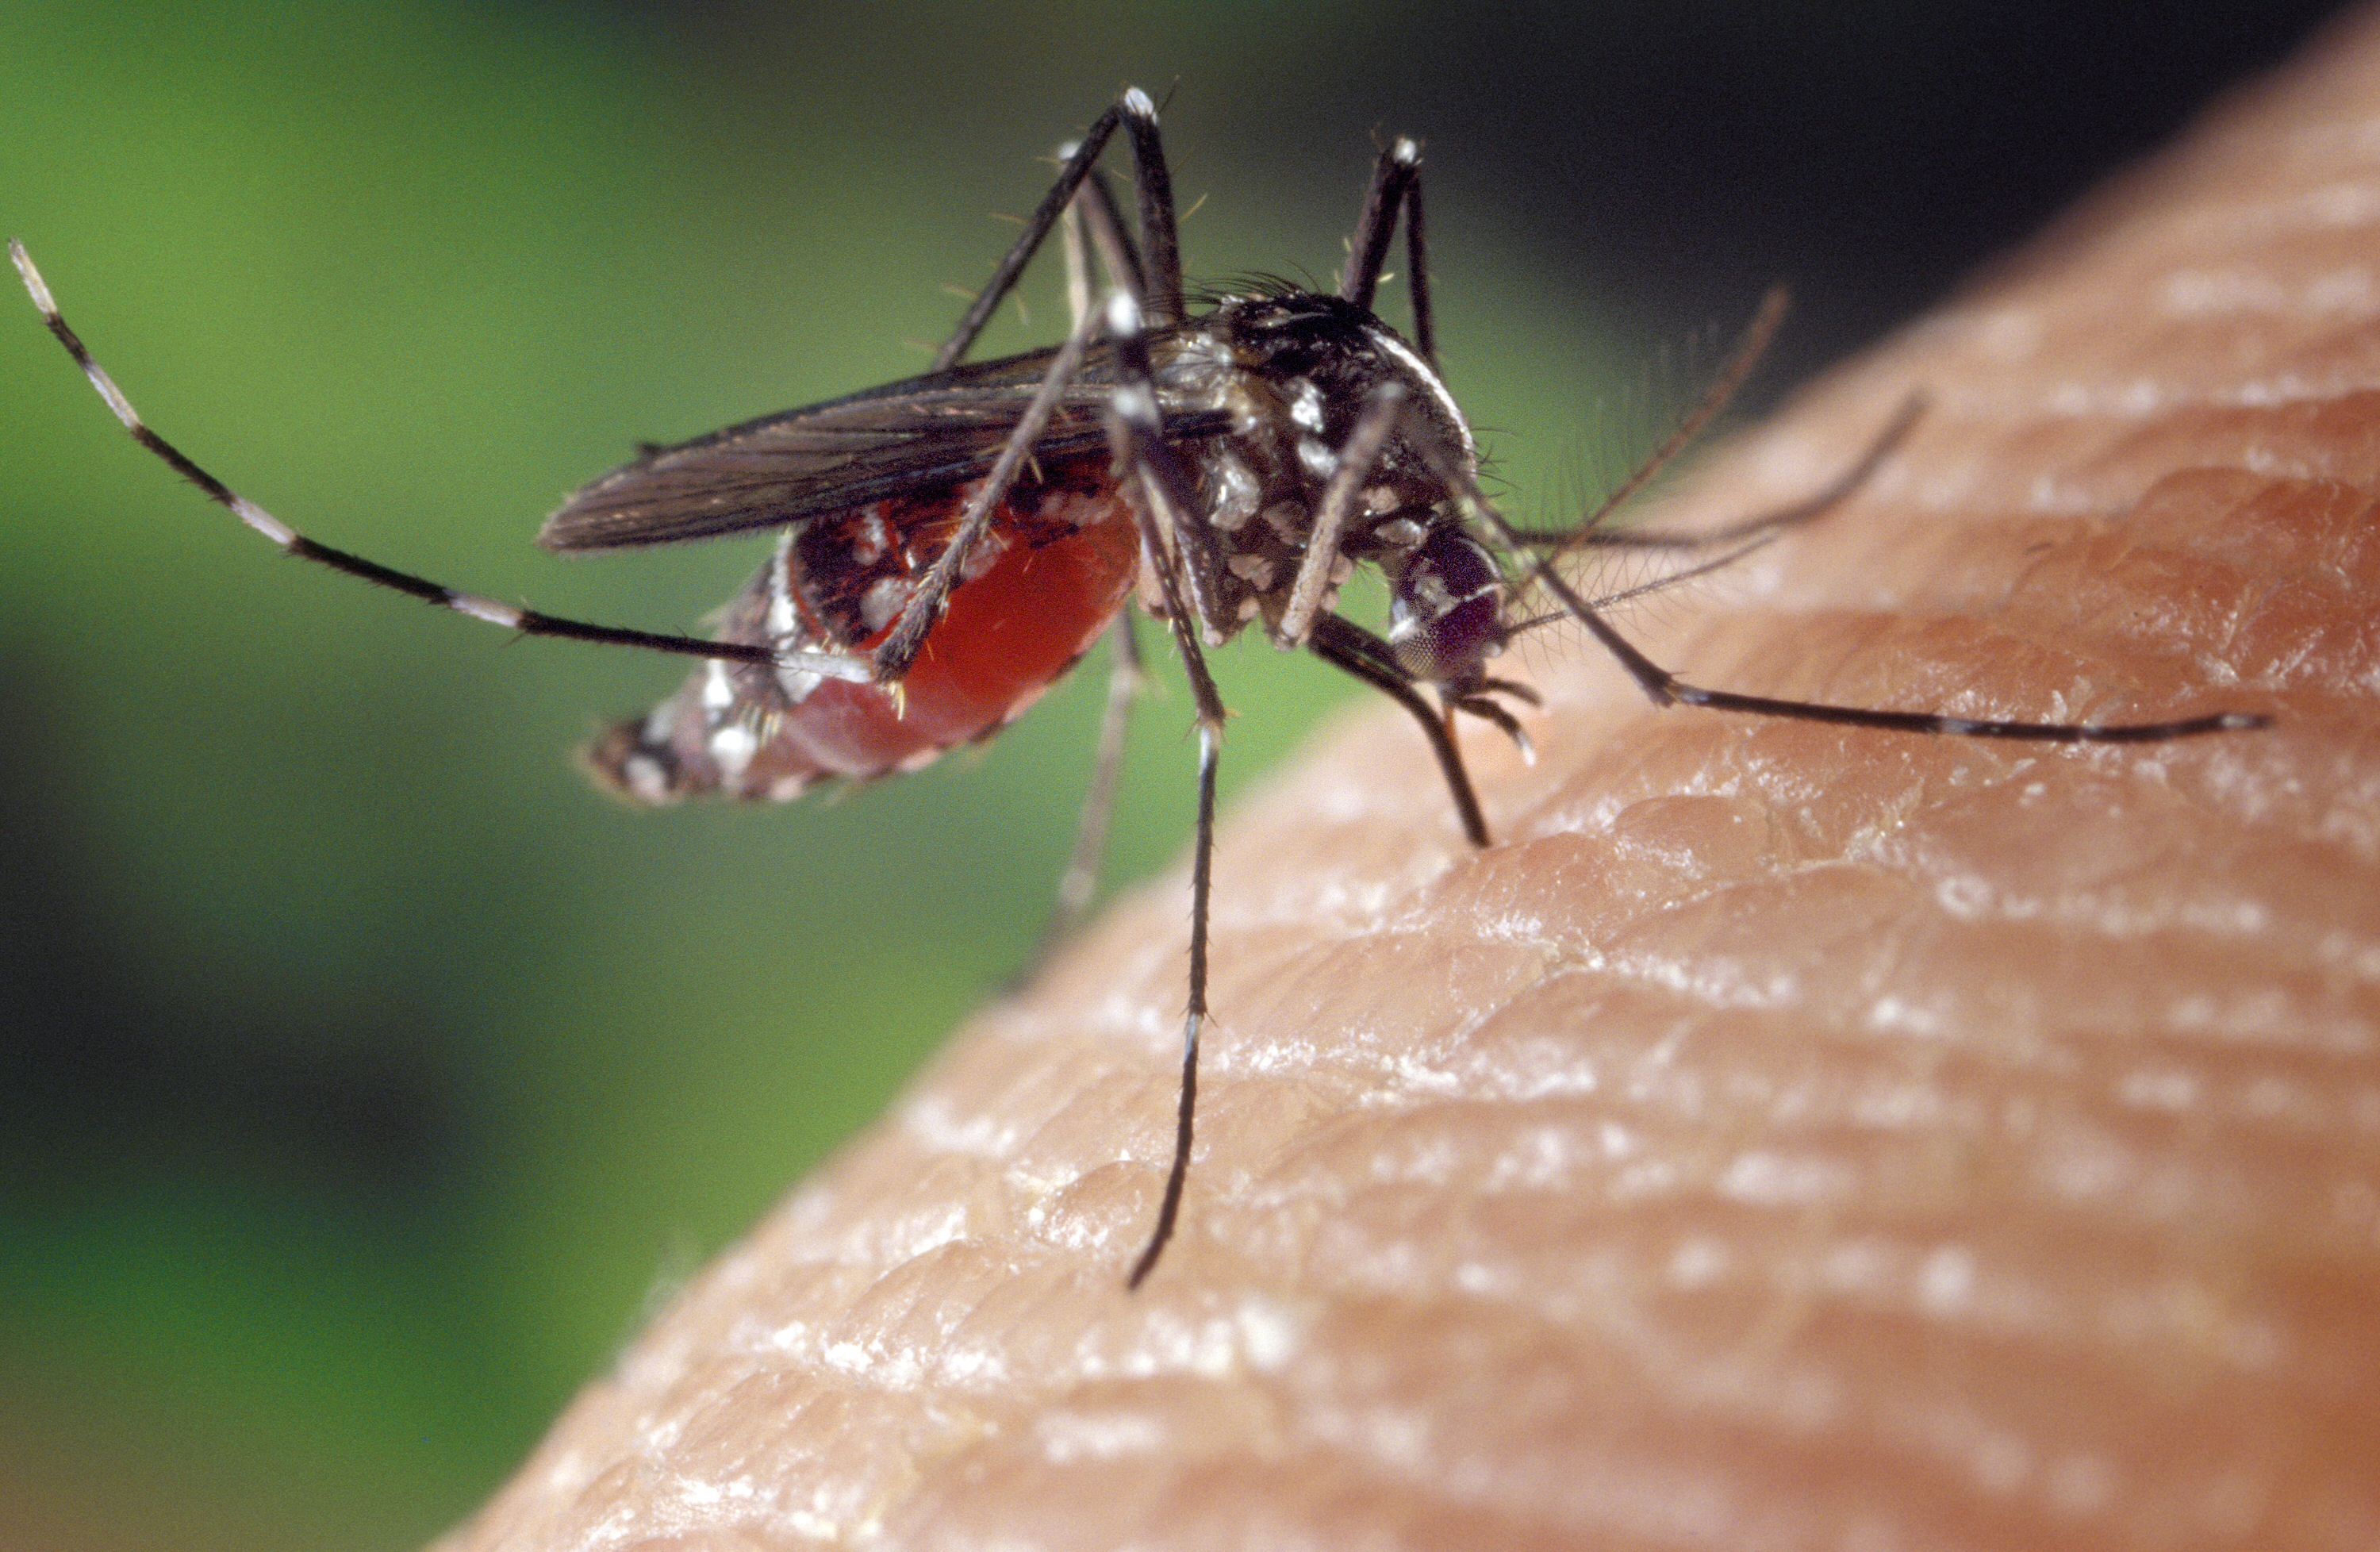 Le moustique-tigre (Aedes albopictus) présent dans le Var serait responsable de la première contamination du chikungunya en France métropolitaine. © James Gathany - Centers for Disease Control and Prevention (domaine public)